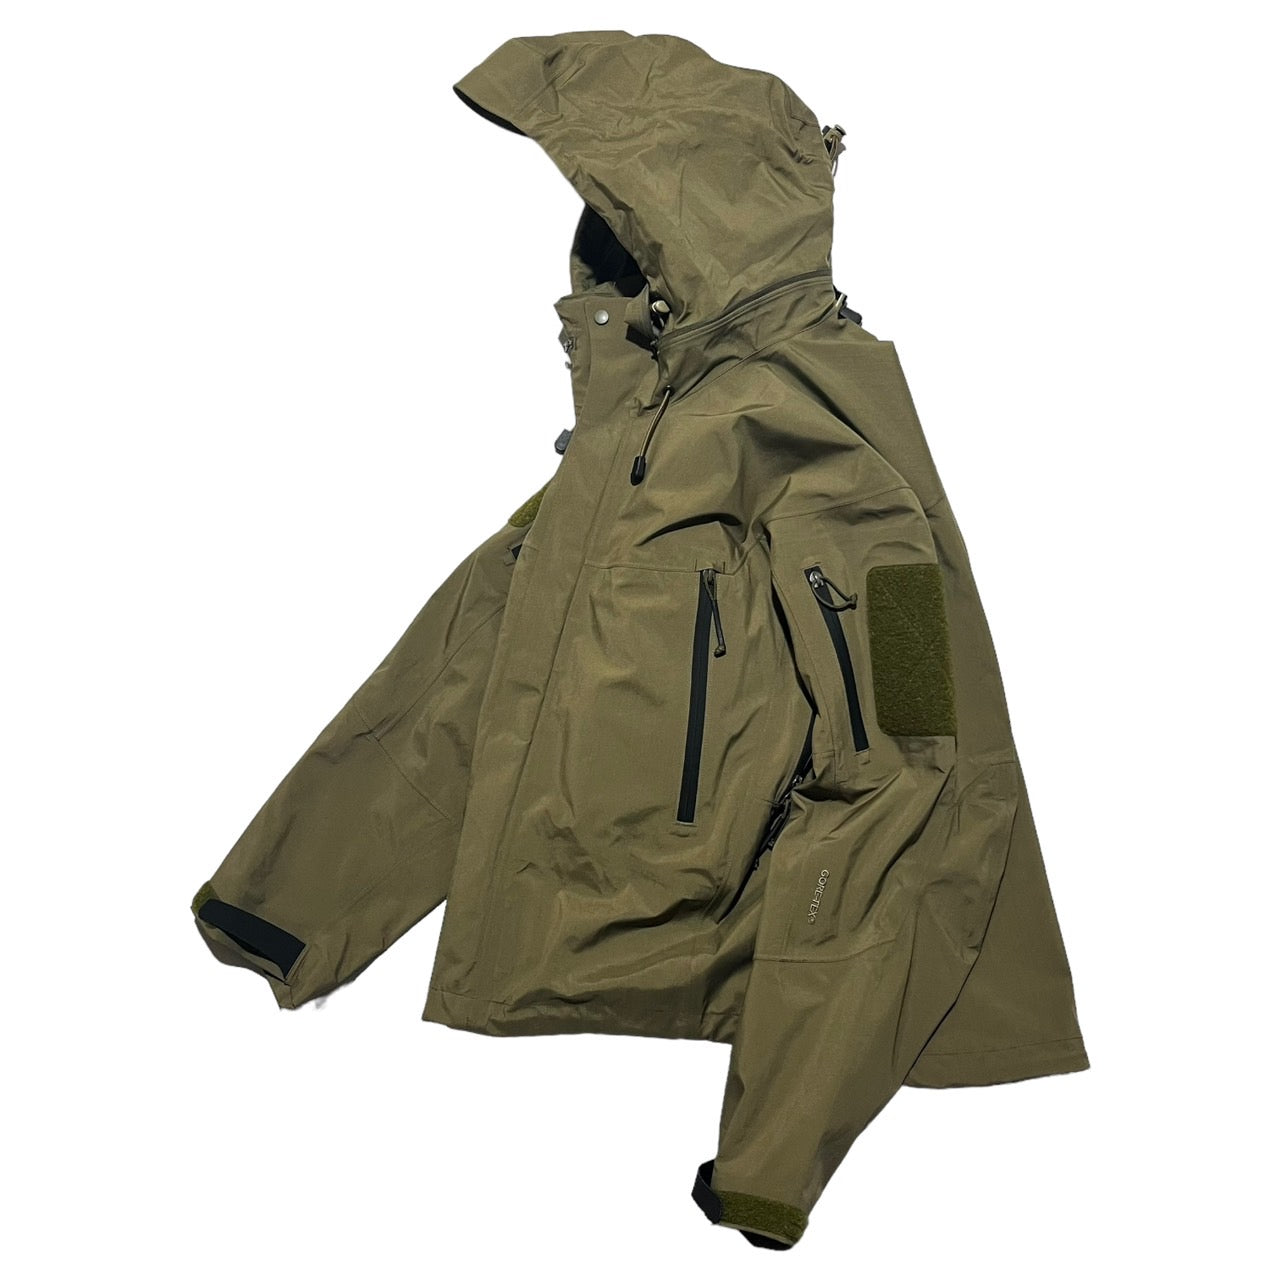 ARC'TERYX(アークテリクス) 00's GORE-TEX LEAF Alpha jacket GEN1//アルファジャケット/マウンテンパーカー 3161 S カーキ 軍用規格/ミリタリー/カナダ製/紺タグ